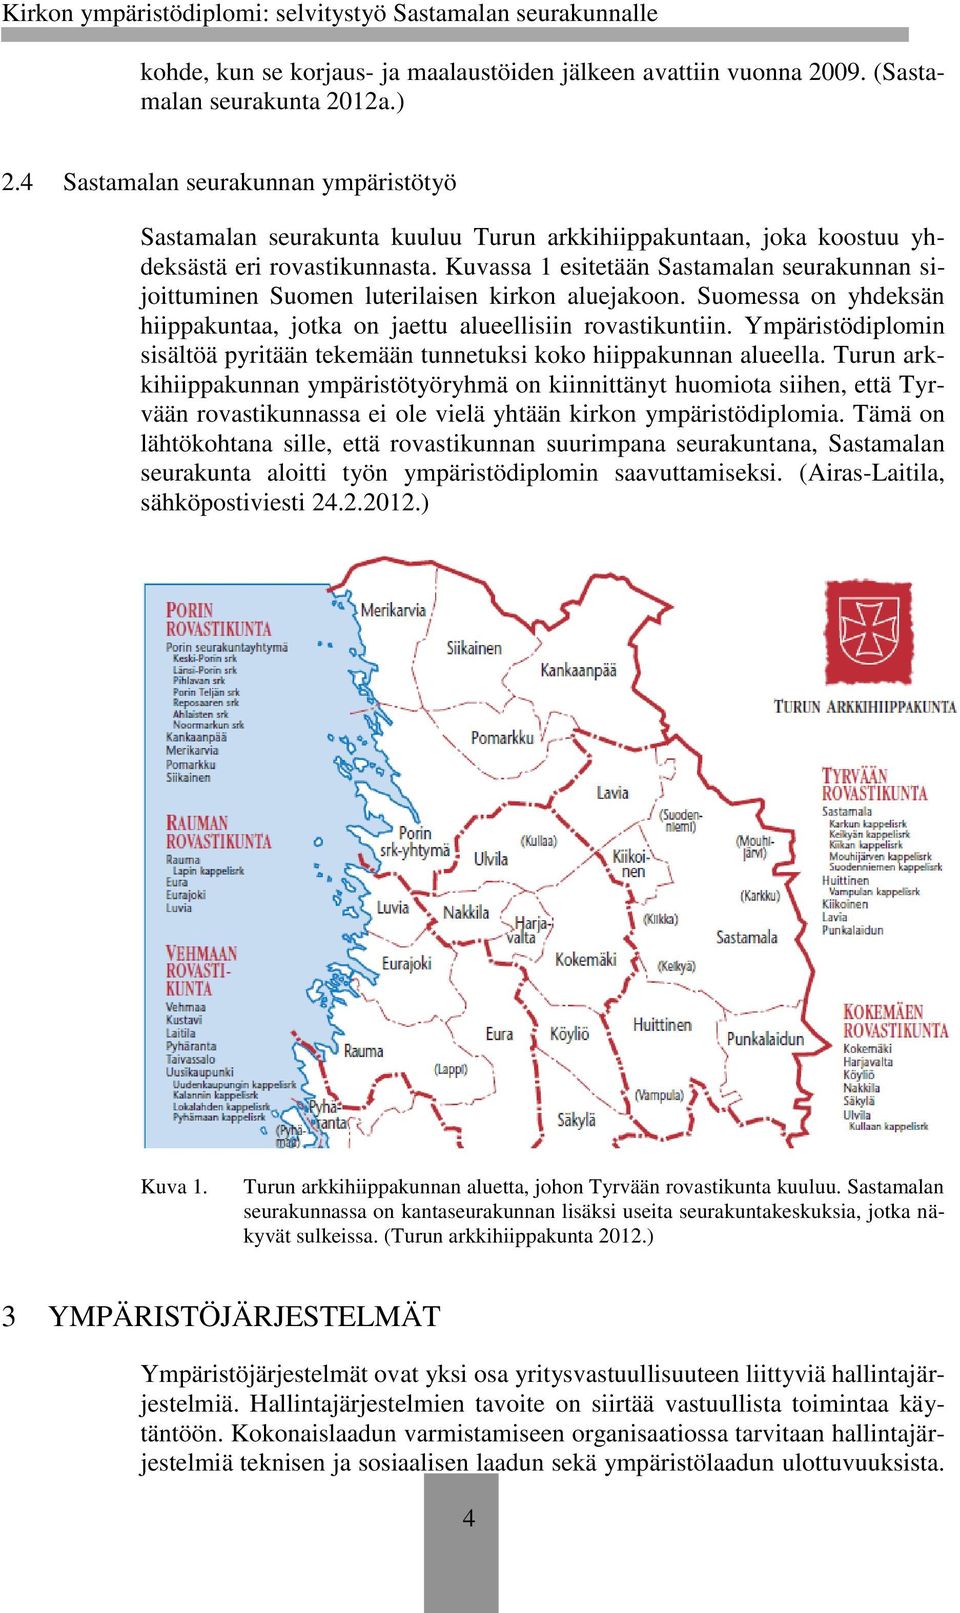 Kuvassa 1 esitetään Sastamalan seurakunnan sijoittuminen Suomen luterilaisen kirkon aluejakoon. Suomessa on yhdeksän hiippakuntaa, jotka on jaettu alueellisiin rovastikuntiin.